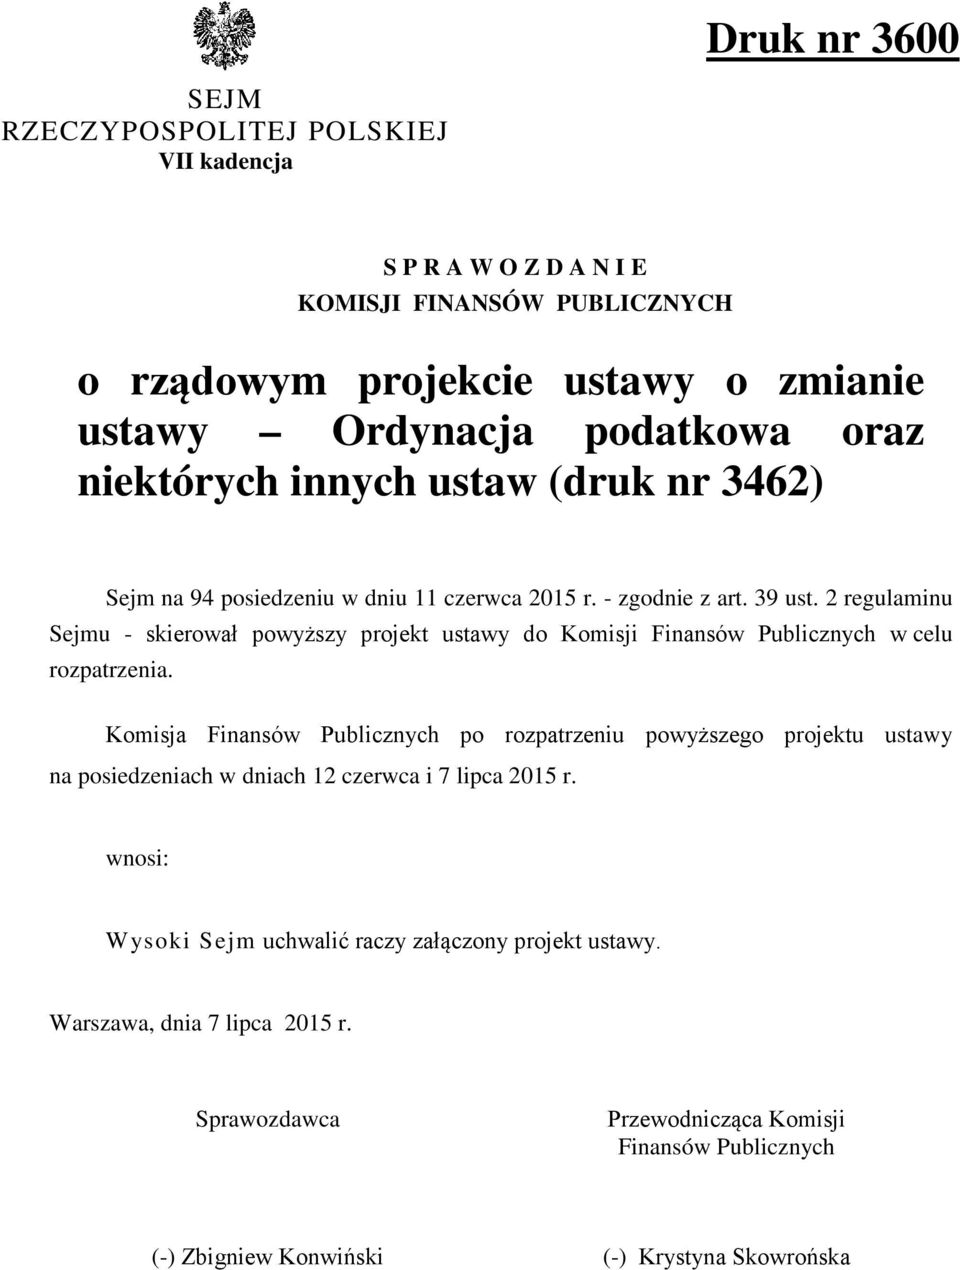 2 regulaminu Sejmu - skierował powyższy projekt ustawy do Komisji Finansów Publicznych w celu rozpatrzenia.